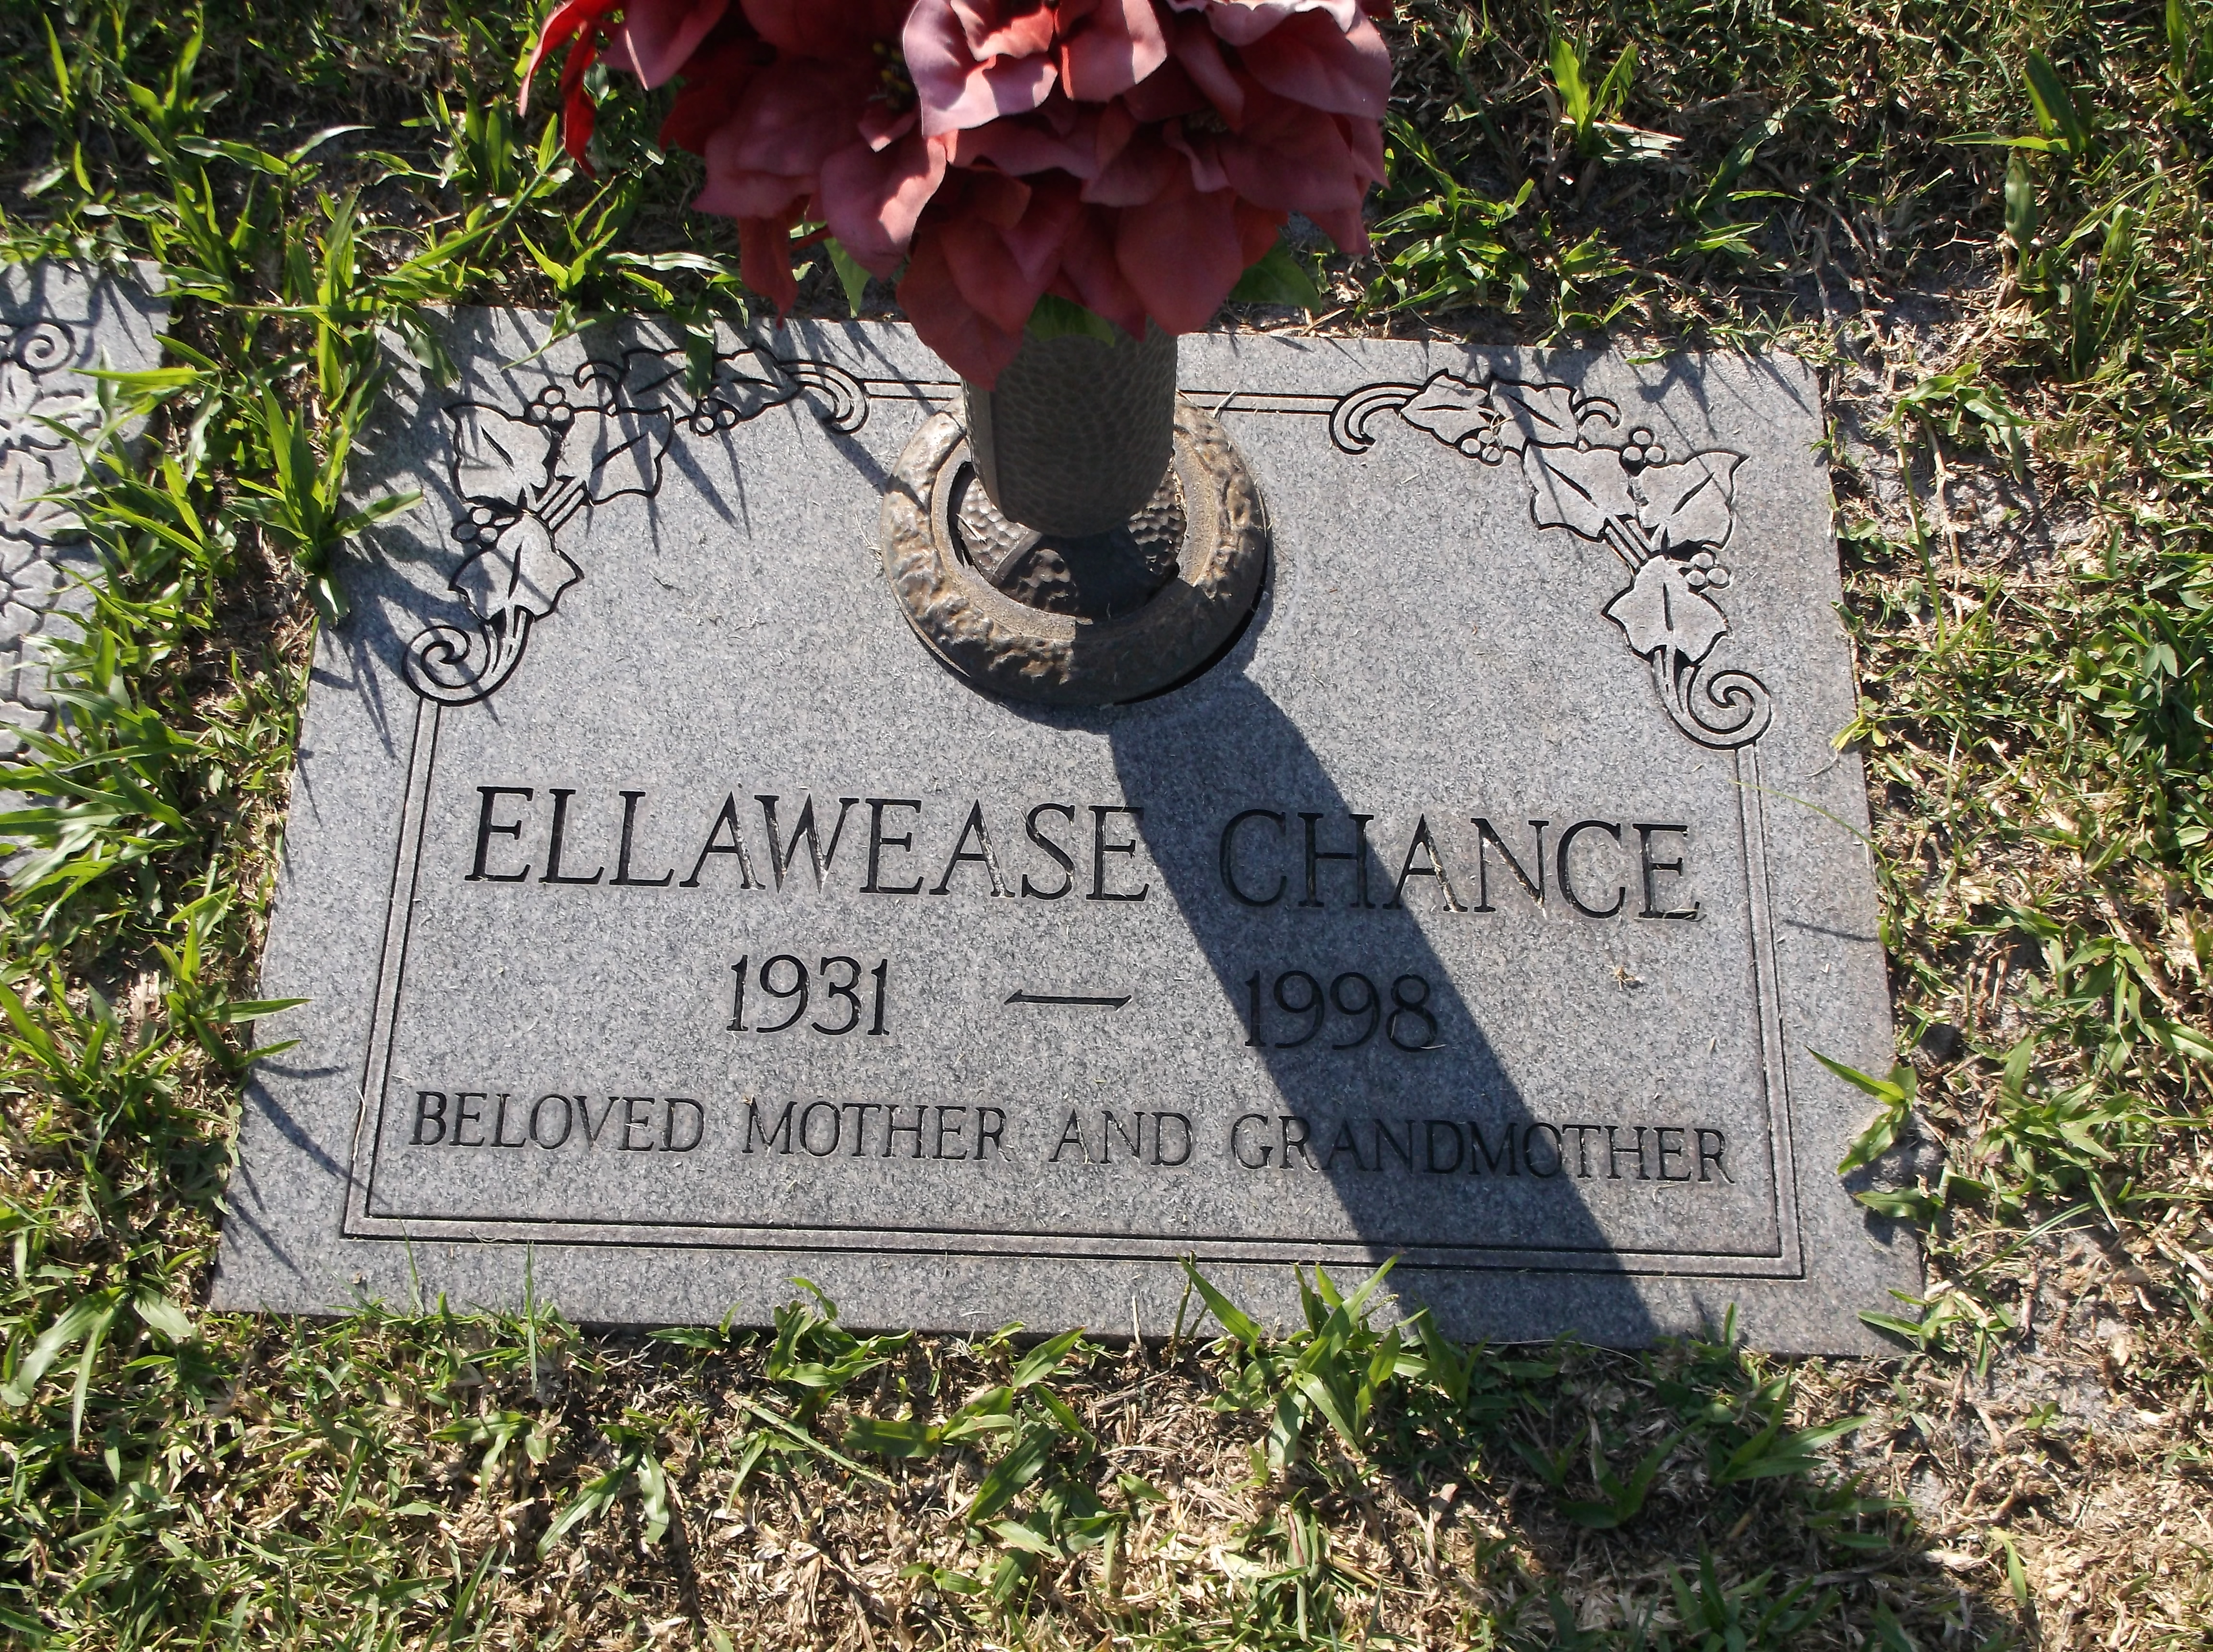 Ellawease Chance